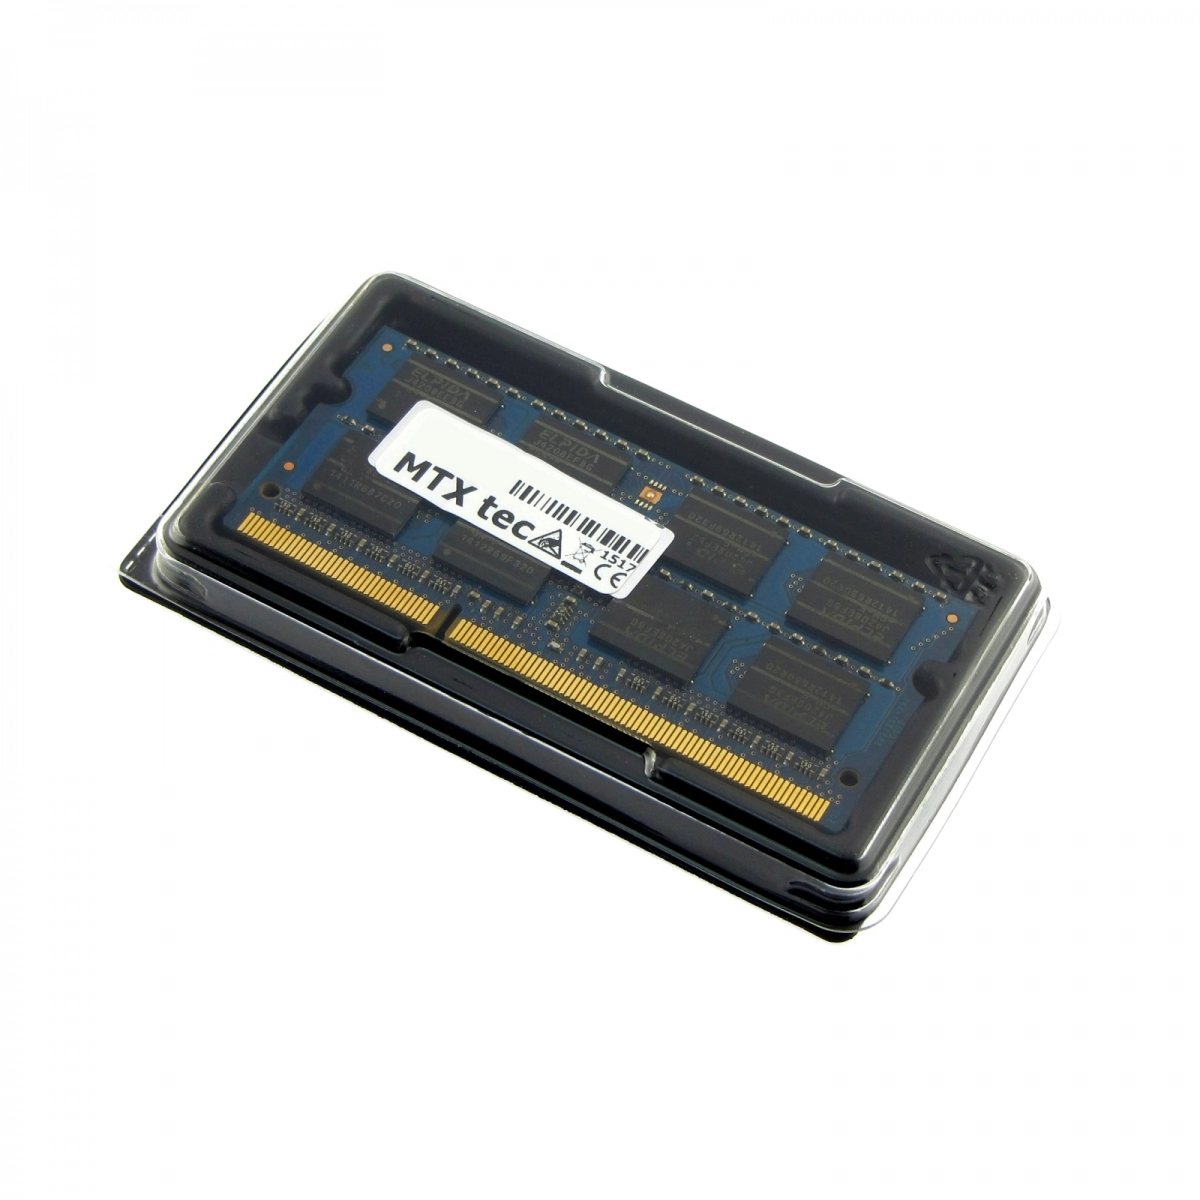 MTXtec Arbeitsspeicher 8 GB RAM für ASUS X54H